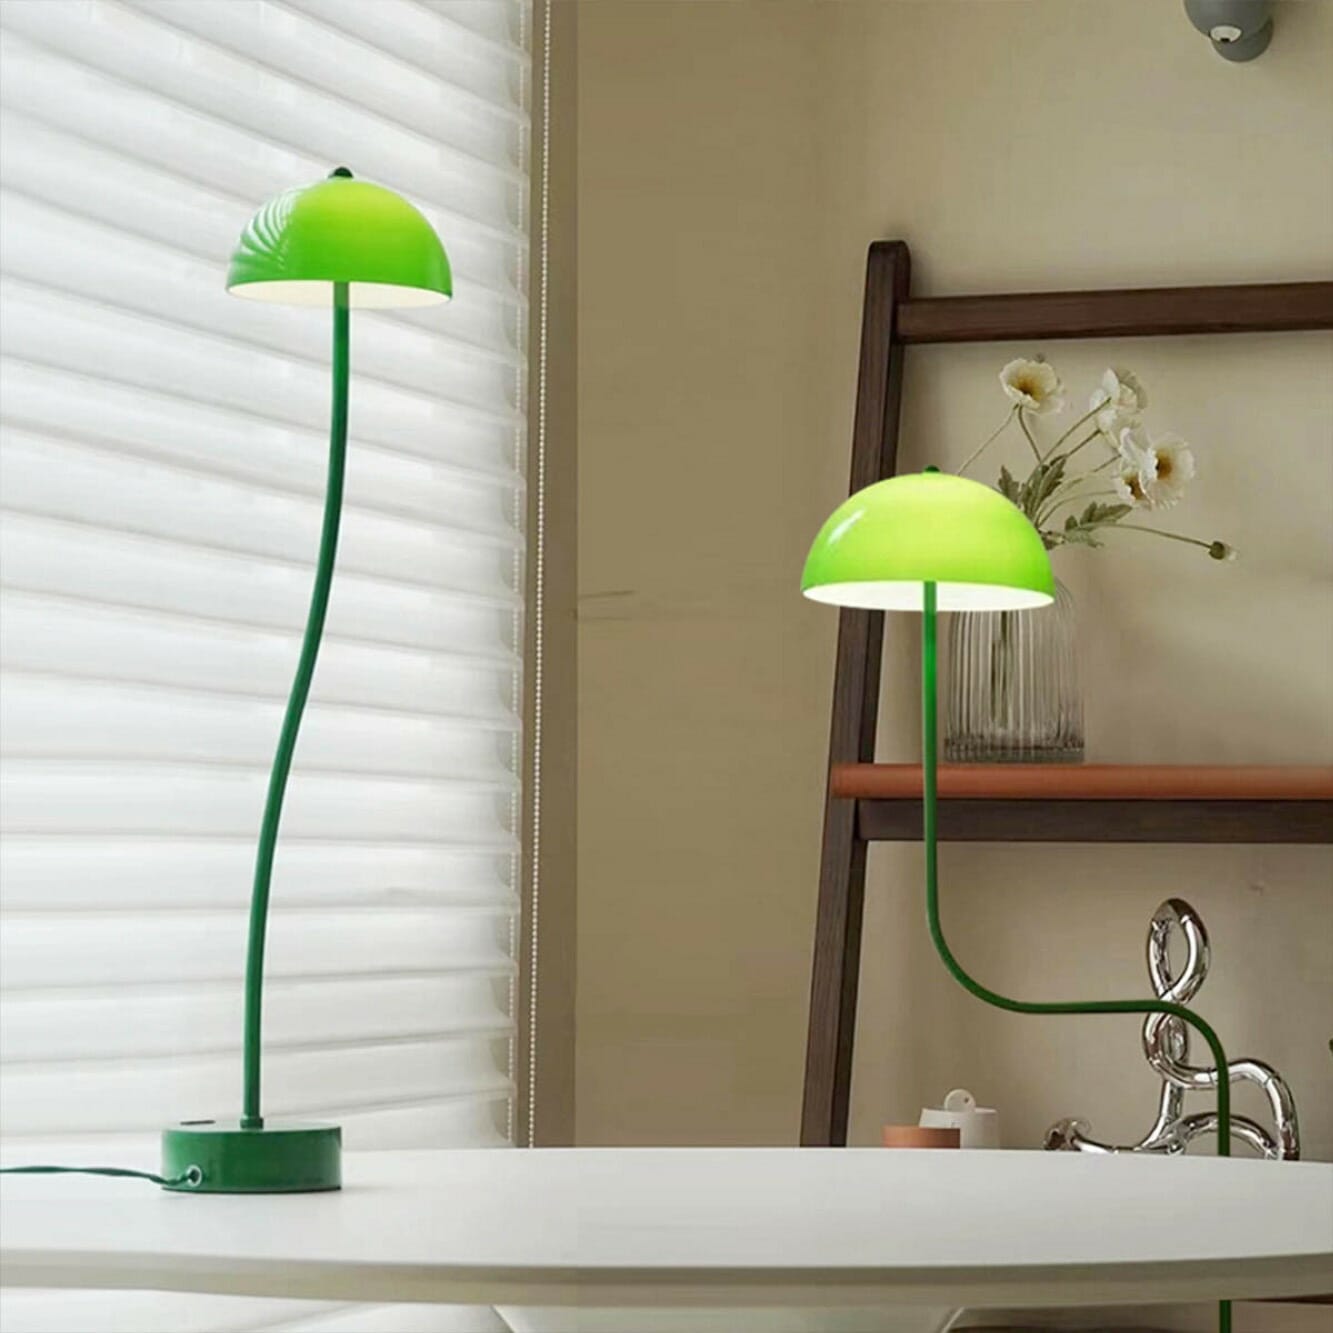 VeroMan ライト テーブルライト グリーン ドーム ランプ みどり 植物の型 ナイトライト 卓上ライト 照明 間接照明 シンプル モダン レトロ  韓国インテリア | 照明 | 韓国インテリアならVEROMAN HOME (ヴェロマン ホーム)